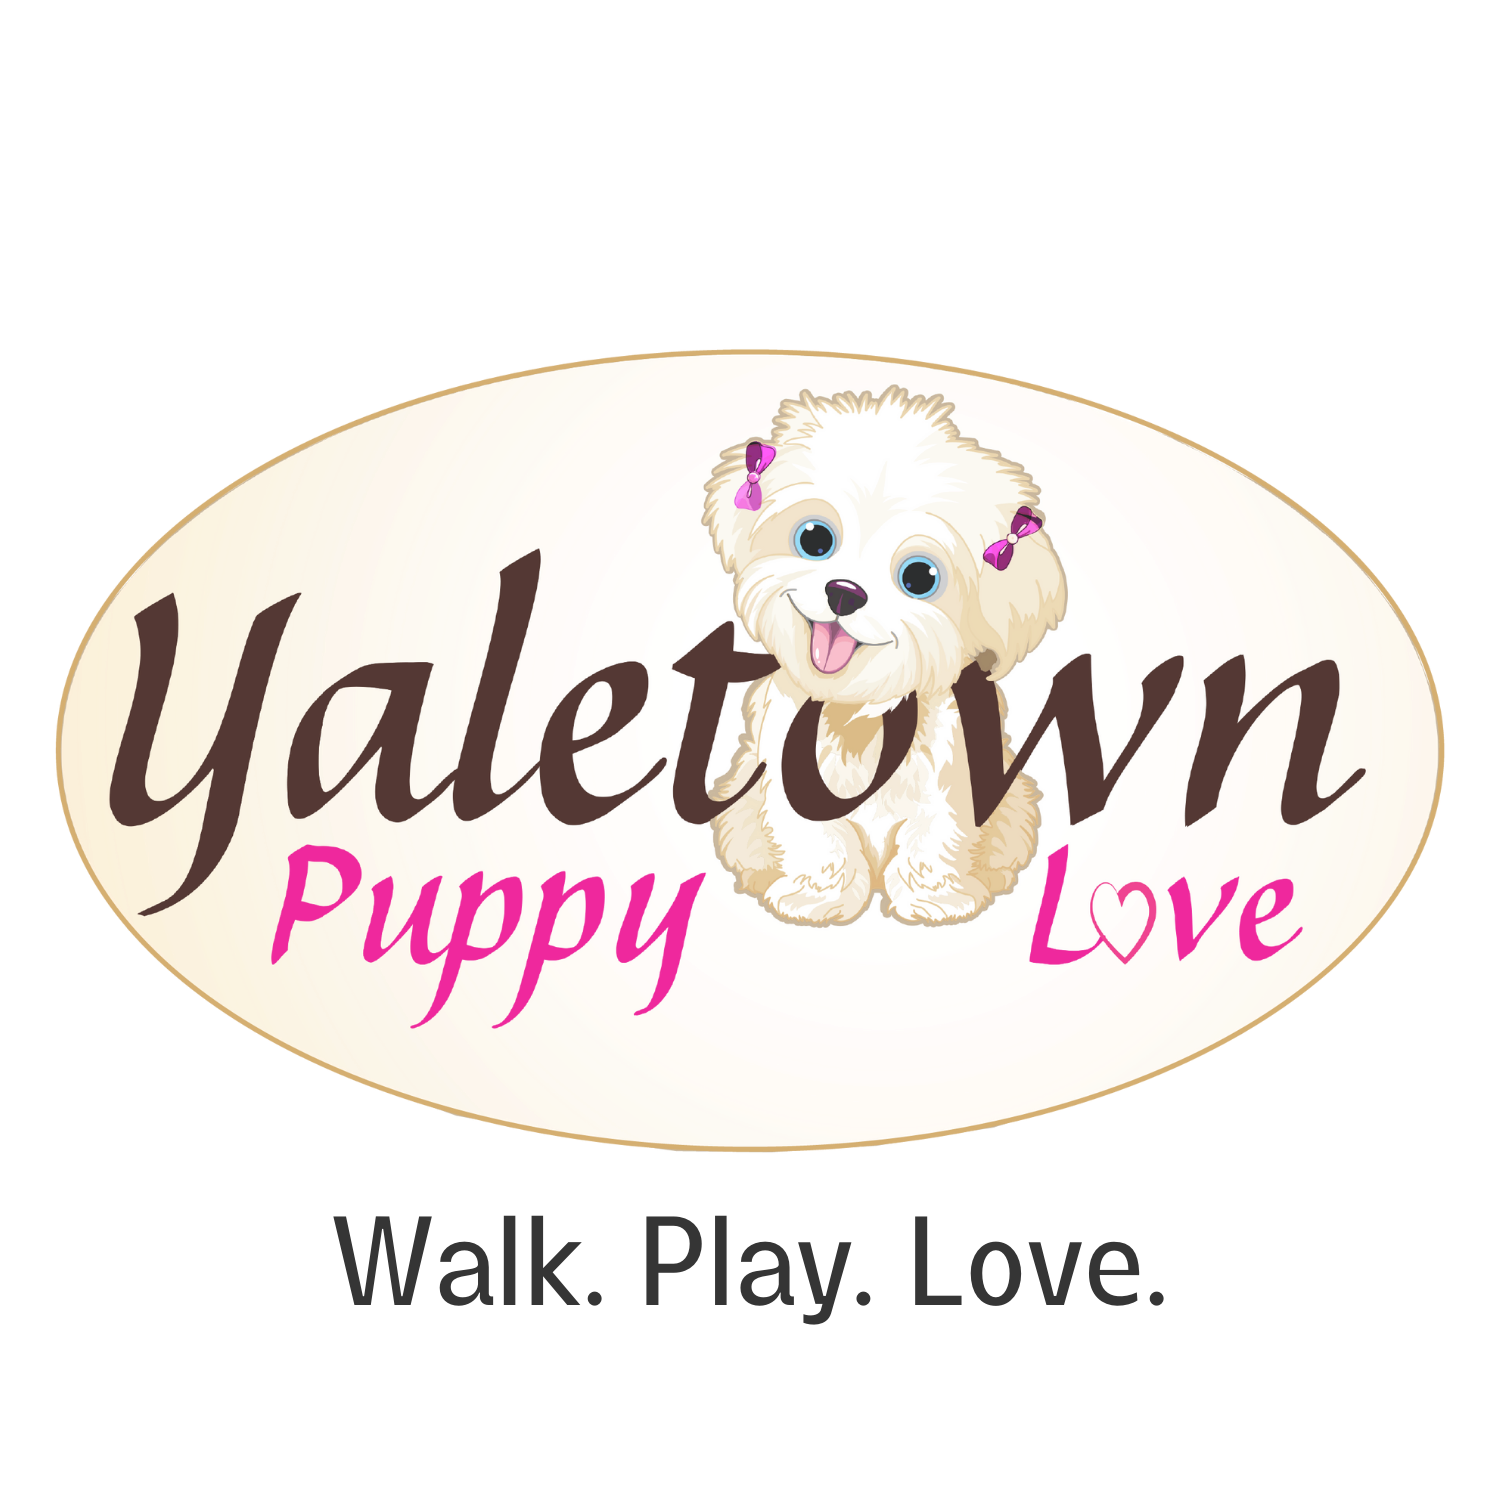 Yaletown Puppy Love